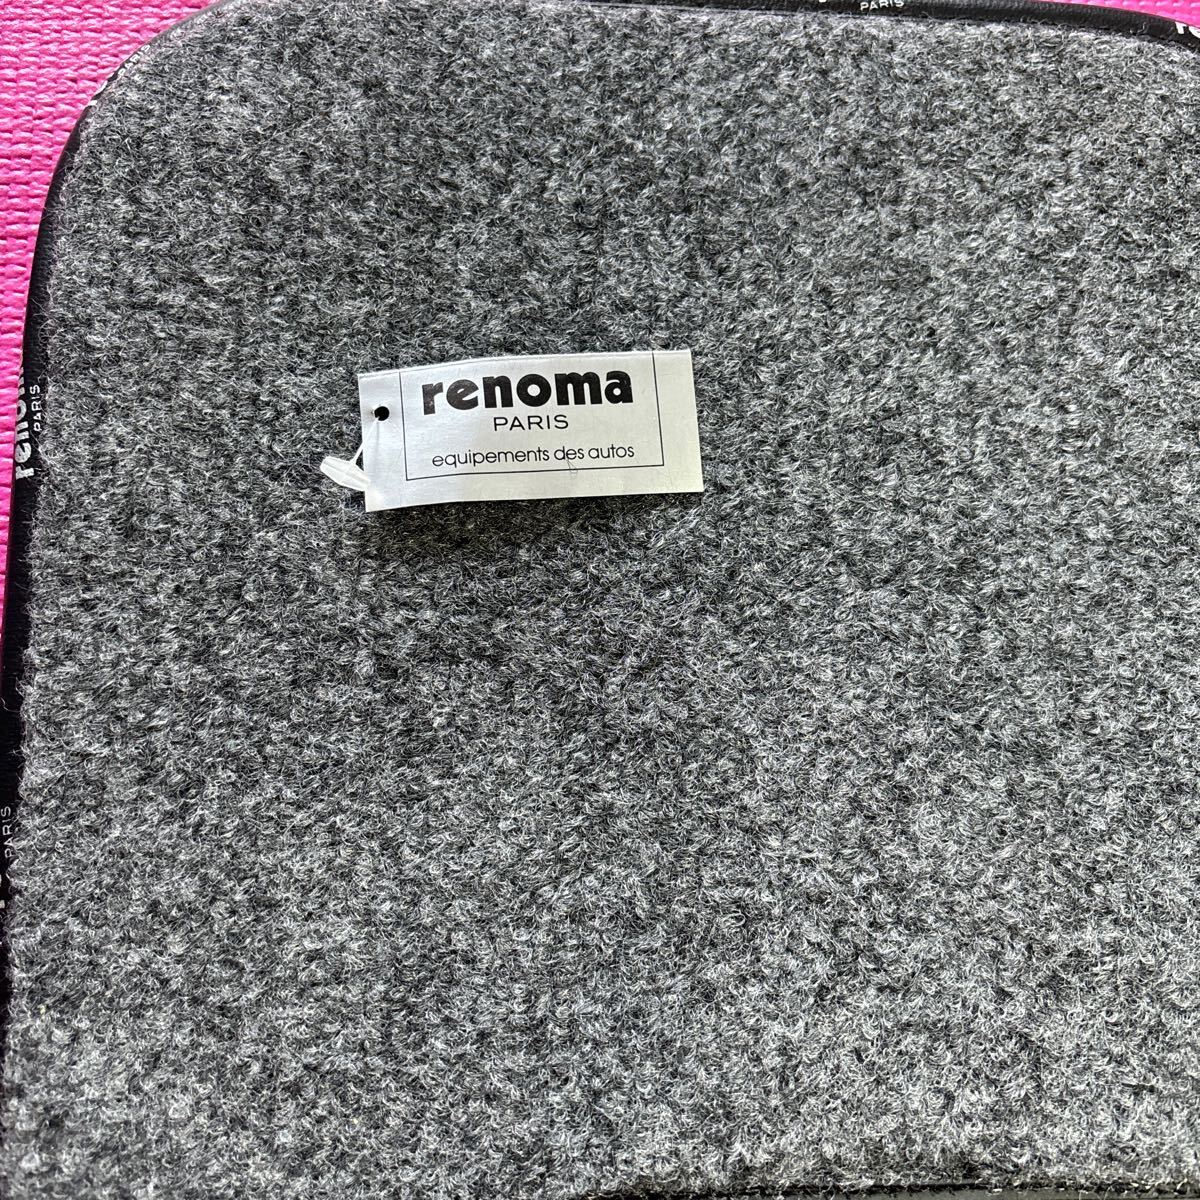 renoma(レノマ)フロアマット1台分セットの画像3